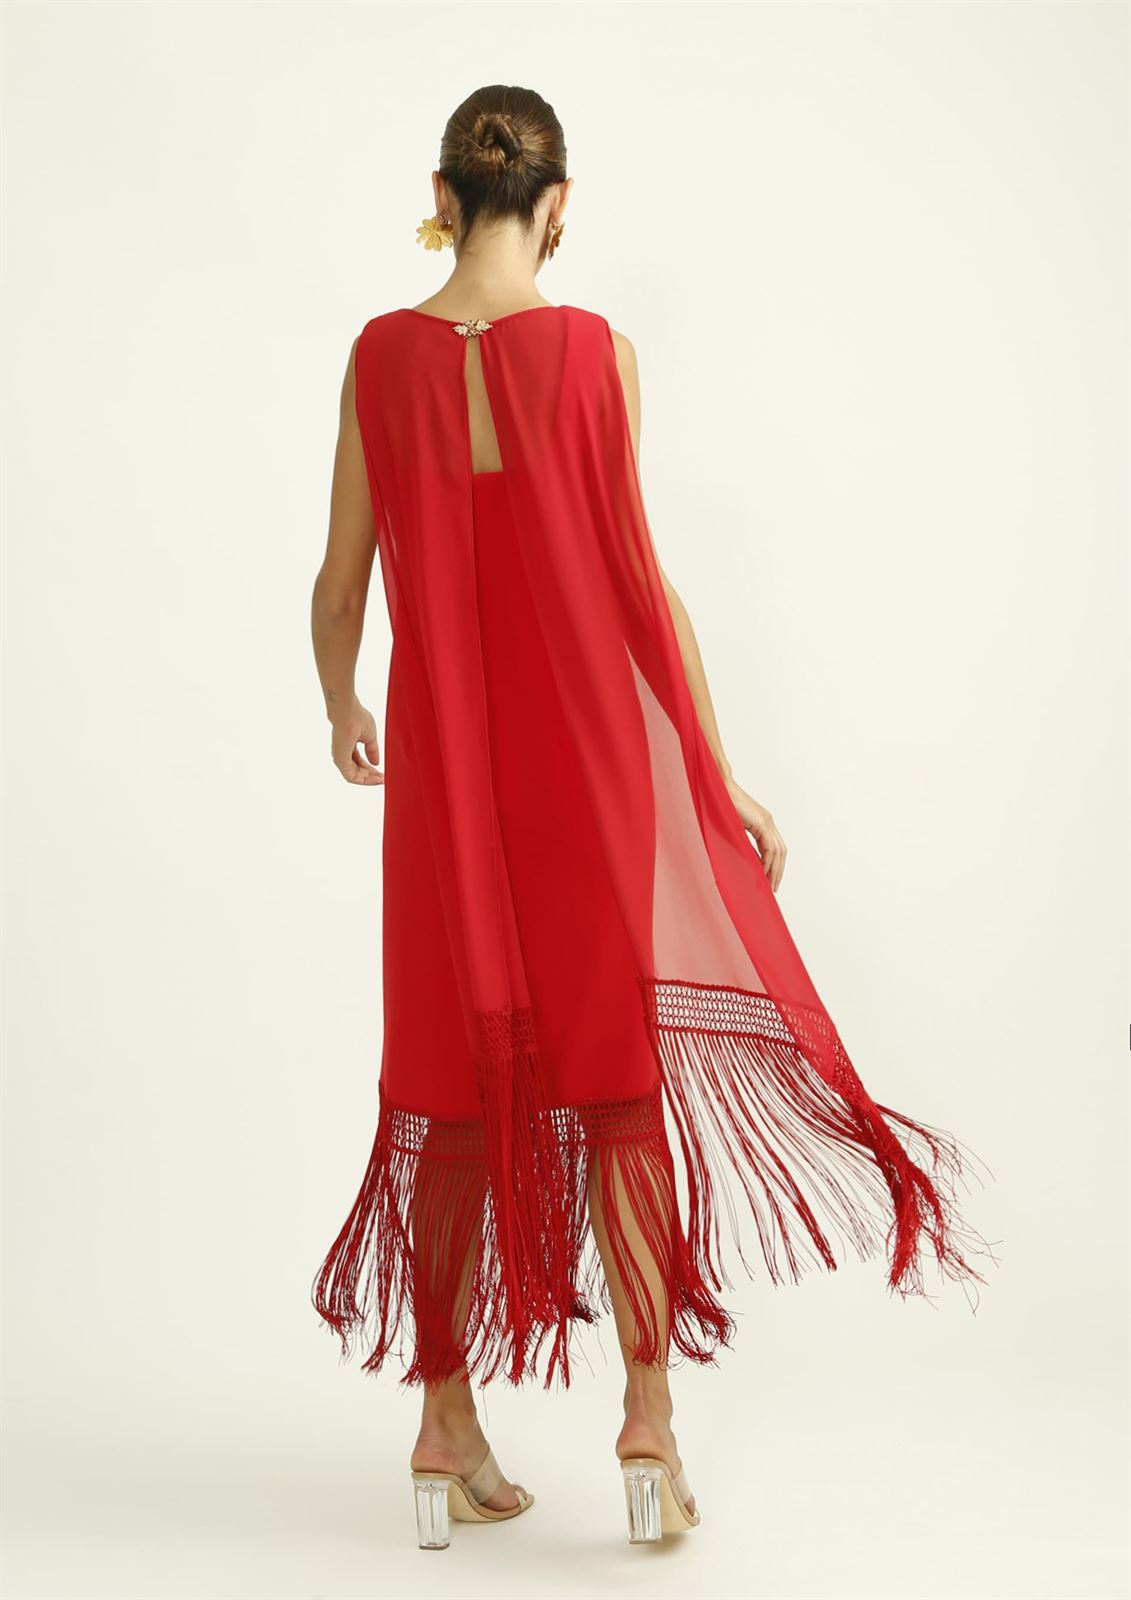 ALBA CONDE Vestido Rojo con Flecos en el Bajo - Imagen 4